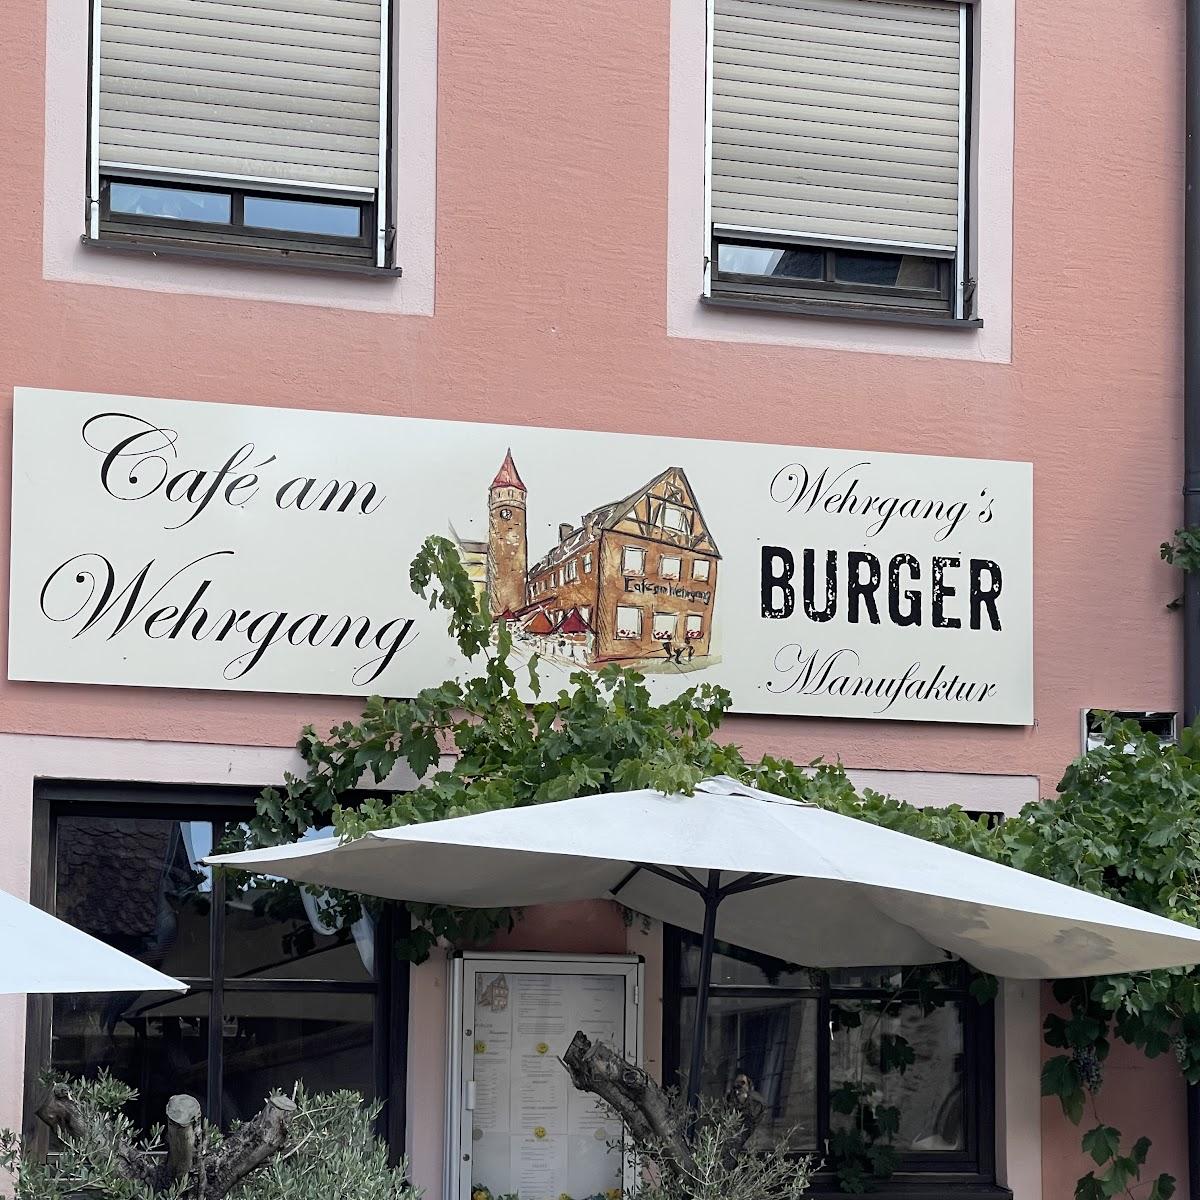 Restaurant "Café am Wehrgang" in Gunzenhausen